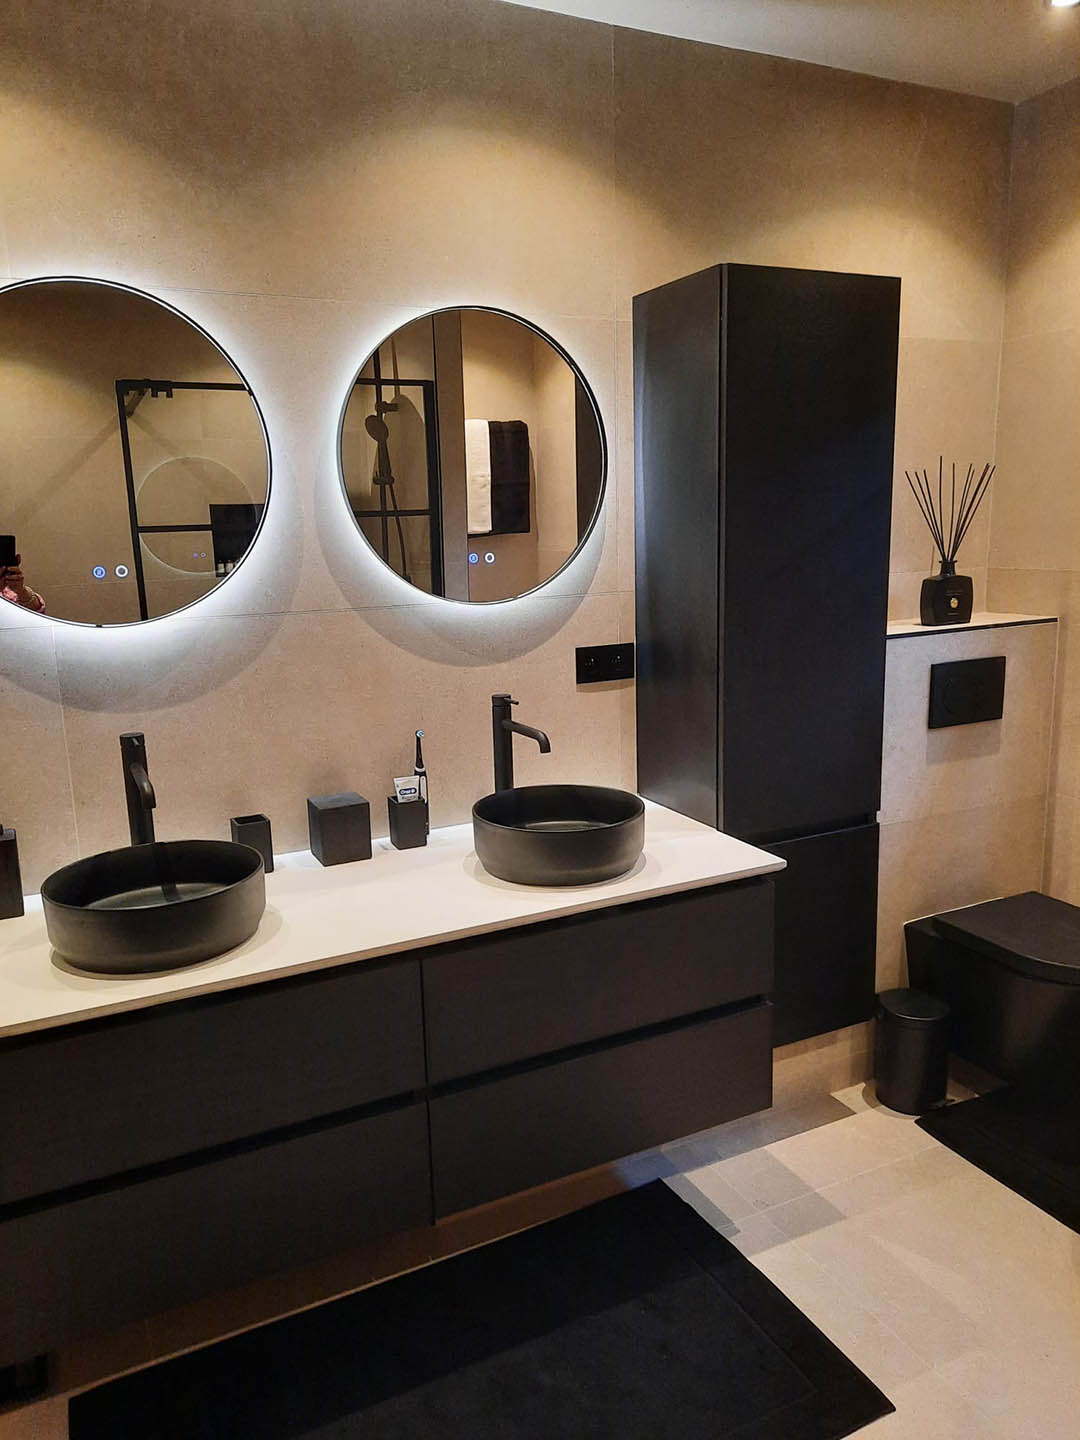 Badkamer renovatie badkamermeubel met dubbele wastafel opbouw met verlichte spiegels